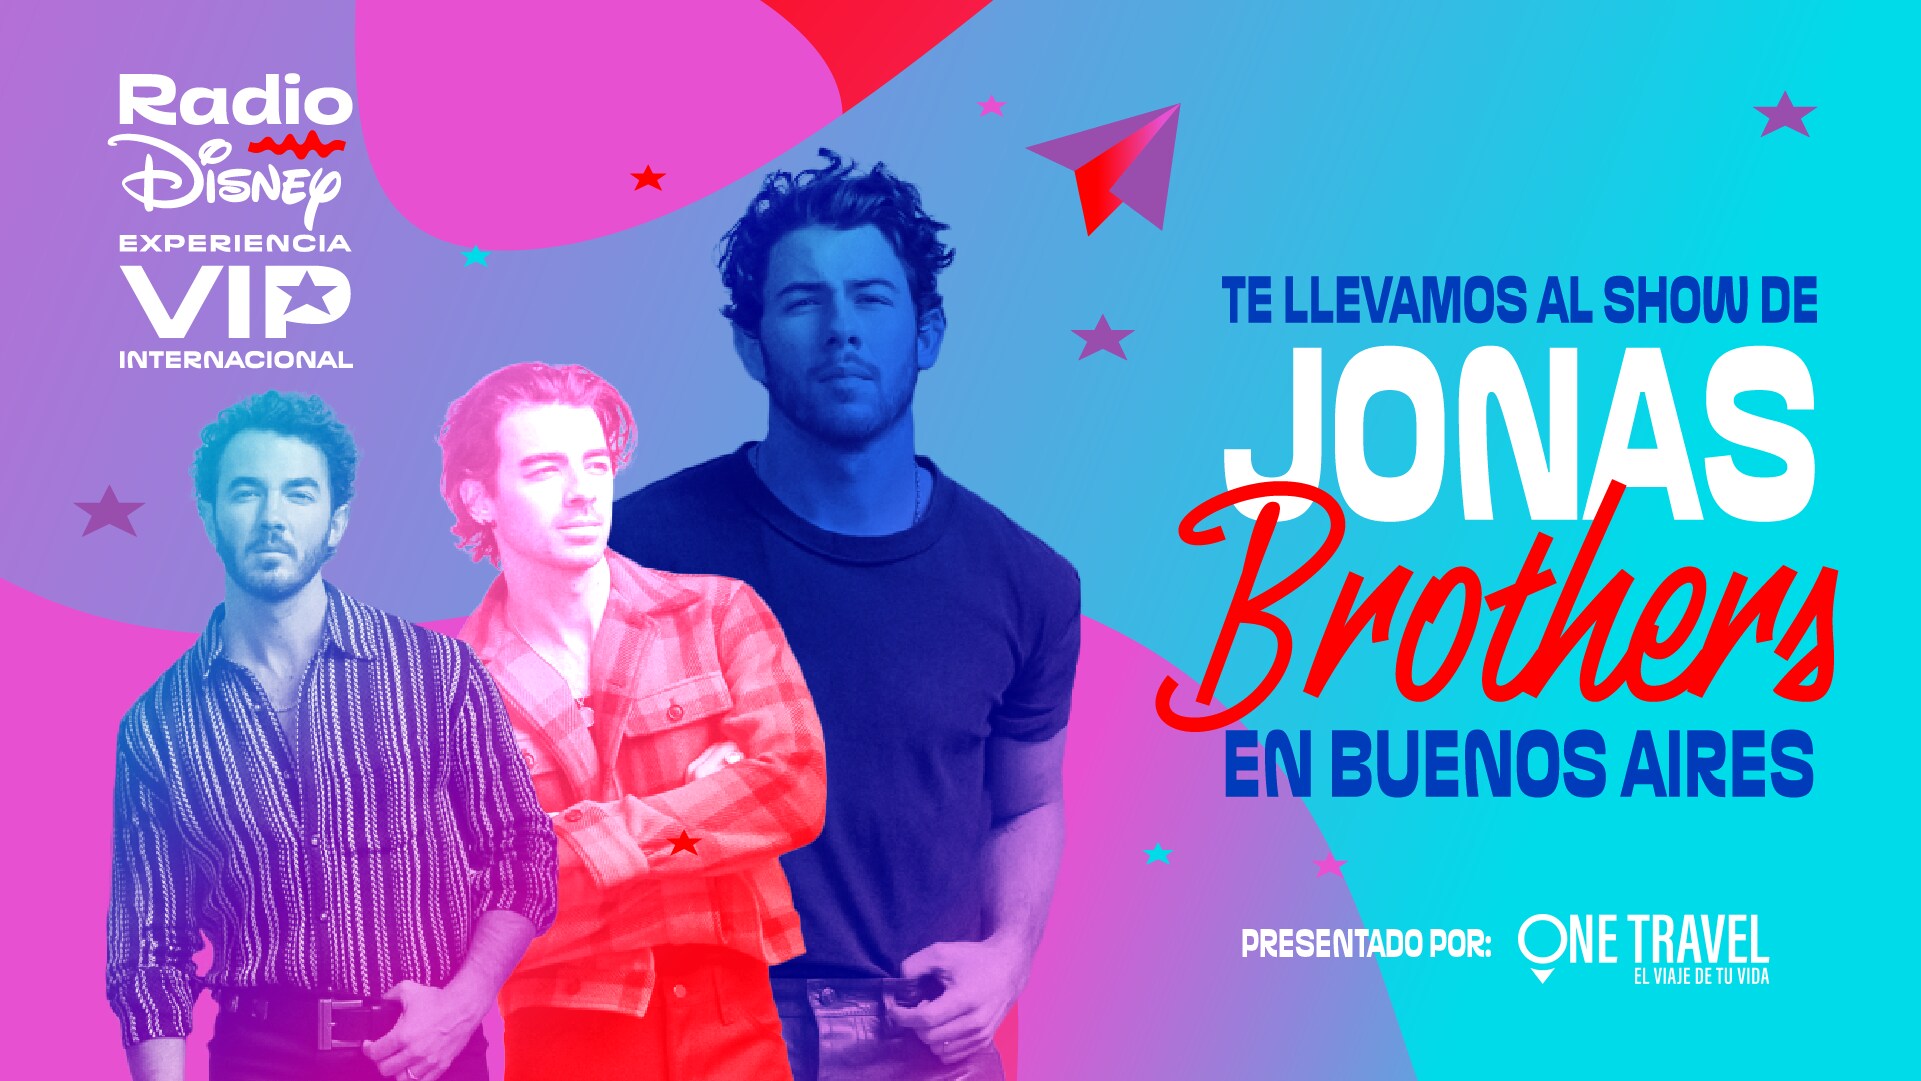 Tu radio te invita a vivir la experiencia VIP internacional de los Jonas Brothers en Buenos Aires 